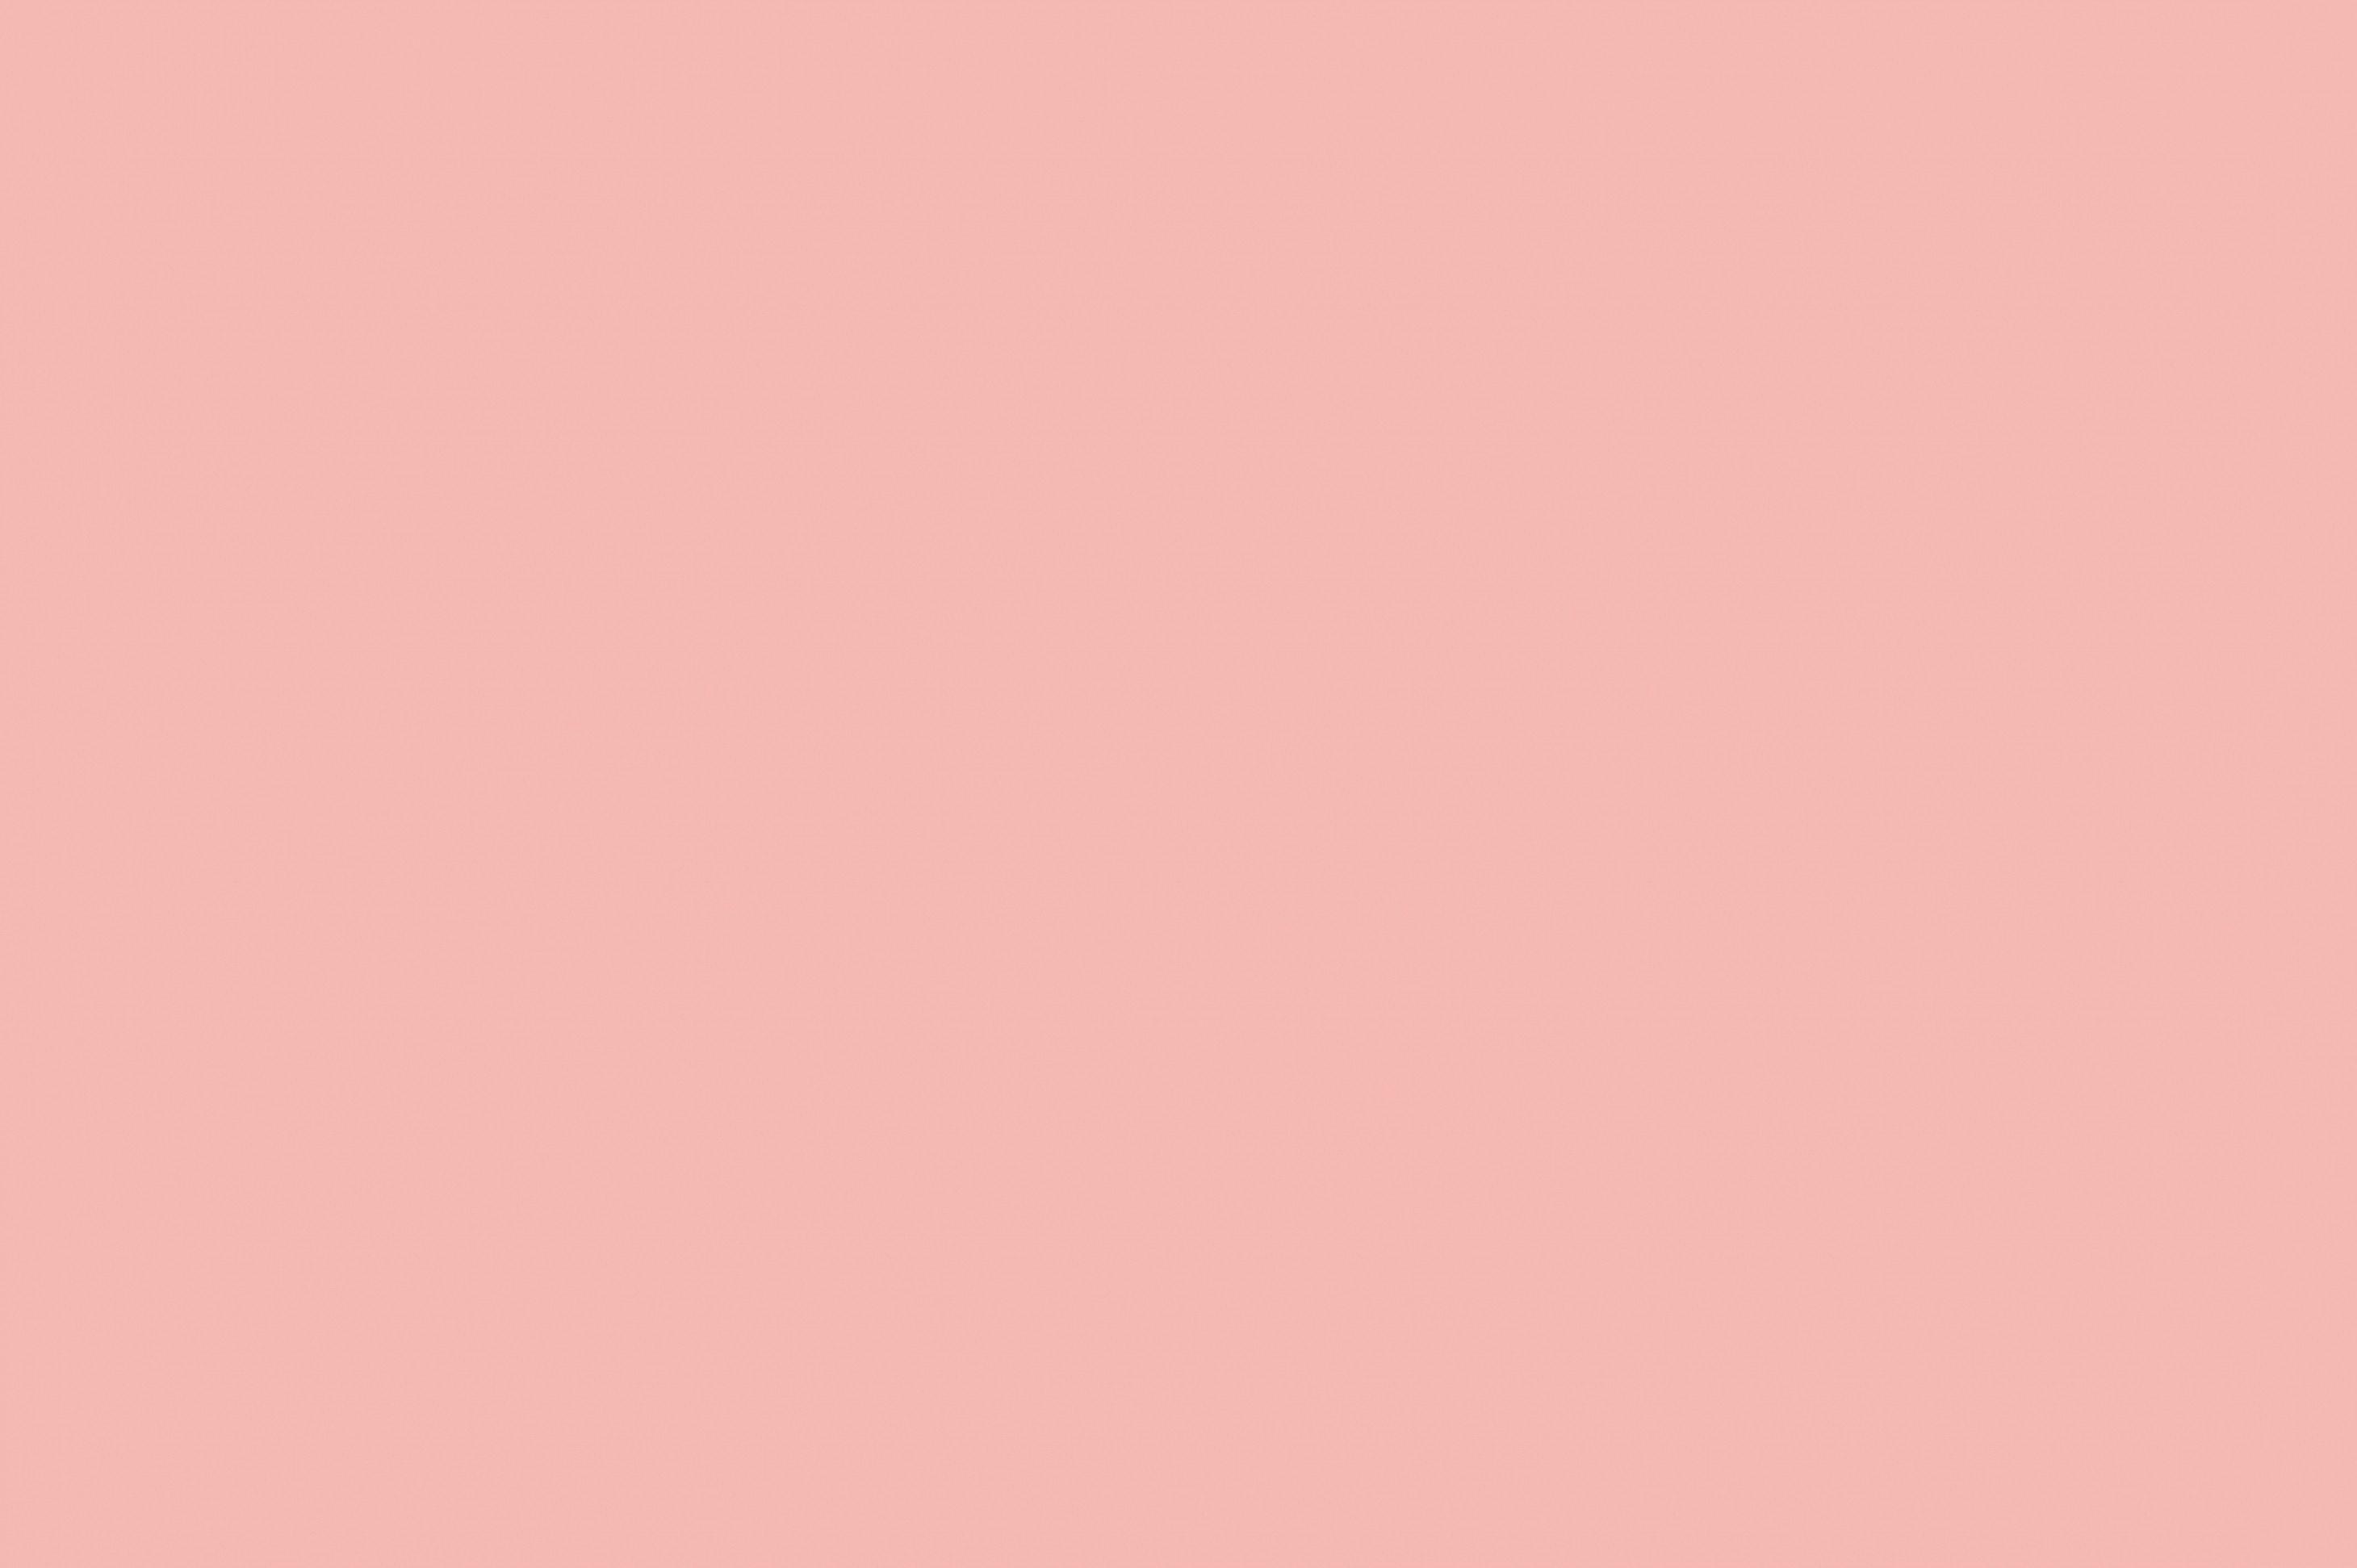 Pale Pink Plain Wallpaper